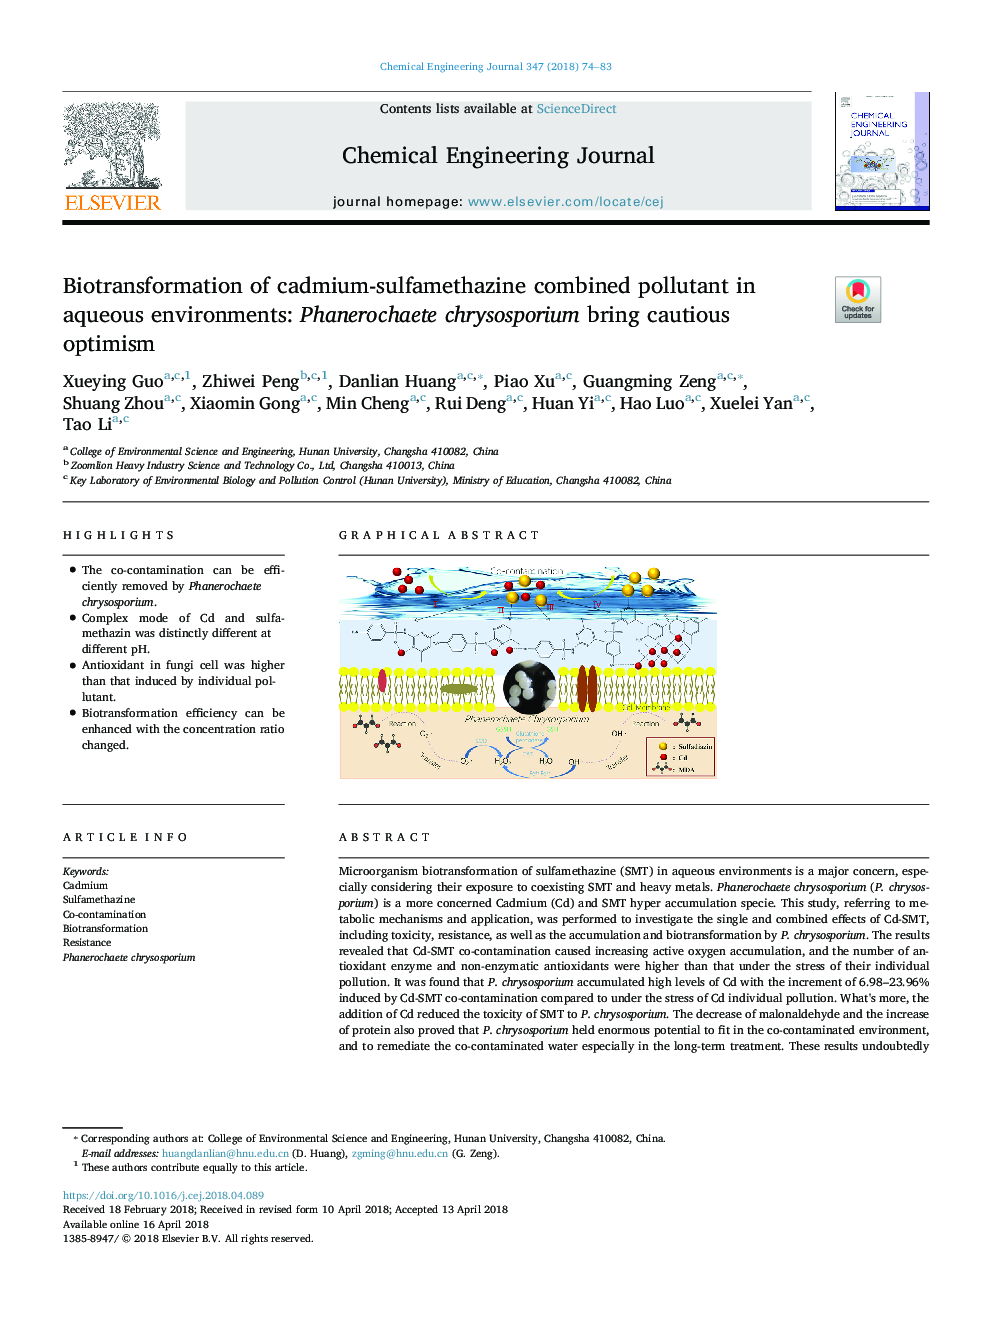 Biotransformation of cadmium-sulfamethazine combined pollutant in aqueous environments: Phanerochaete chrysosporium bring cautious optimism